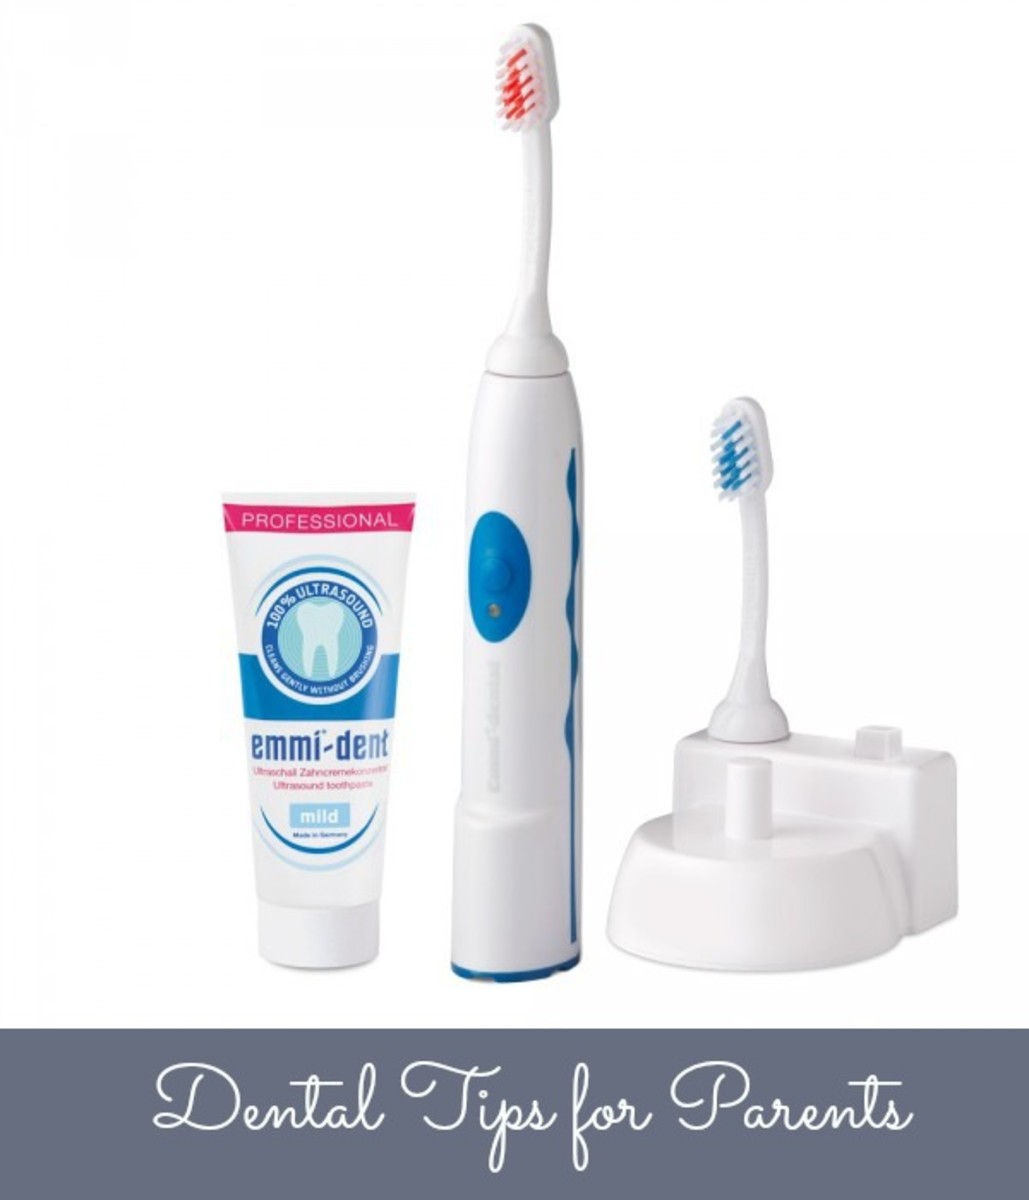 dental tips, dental tips for moms, dental tips for parents